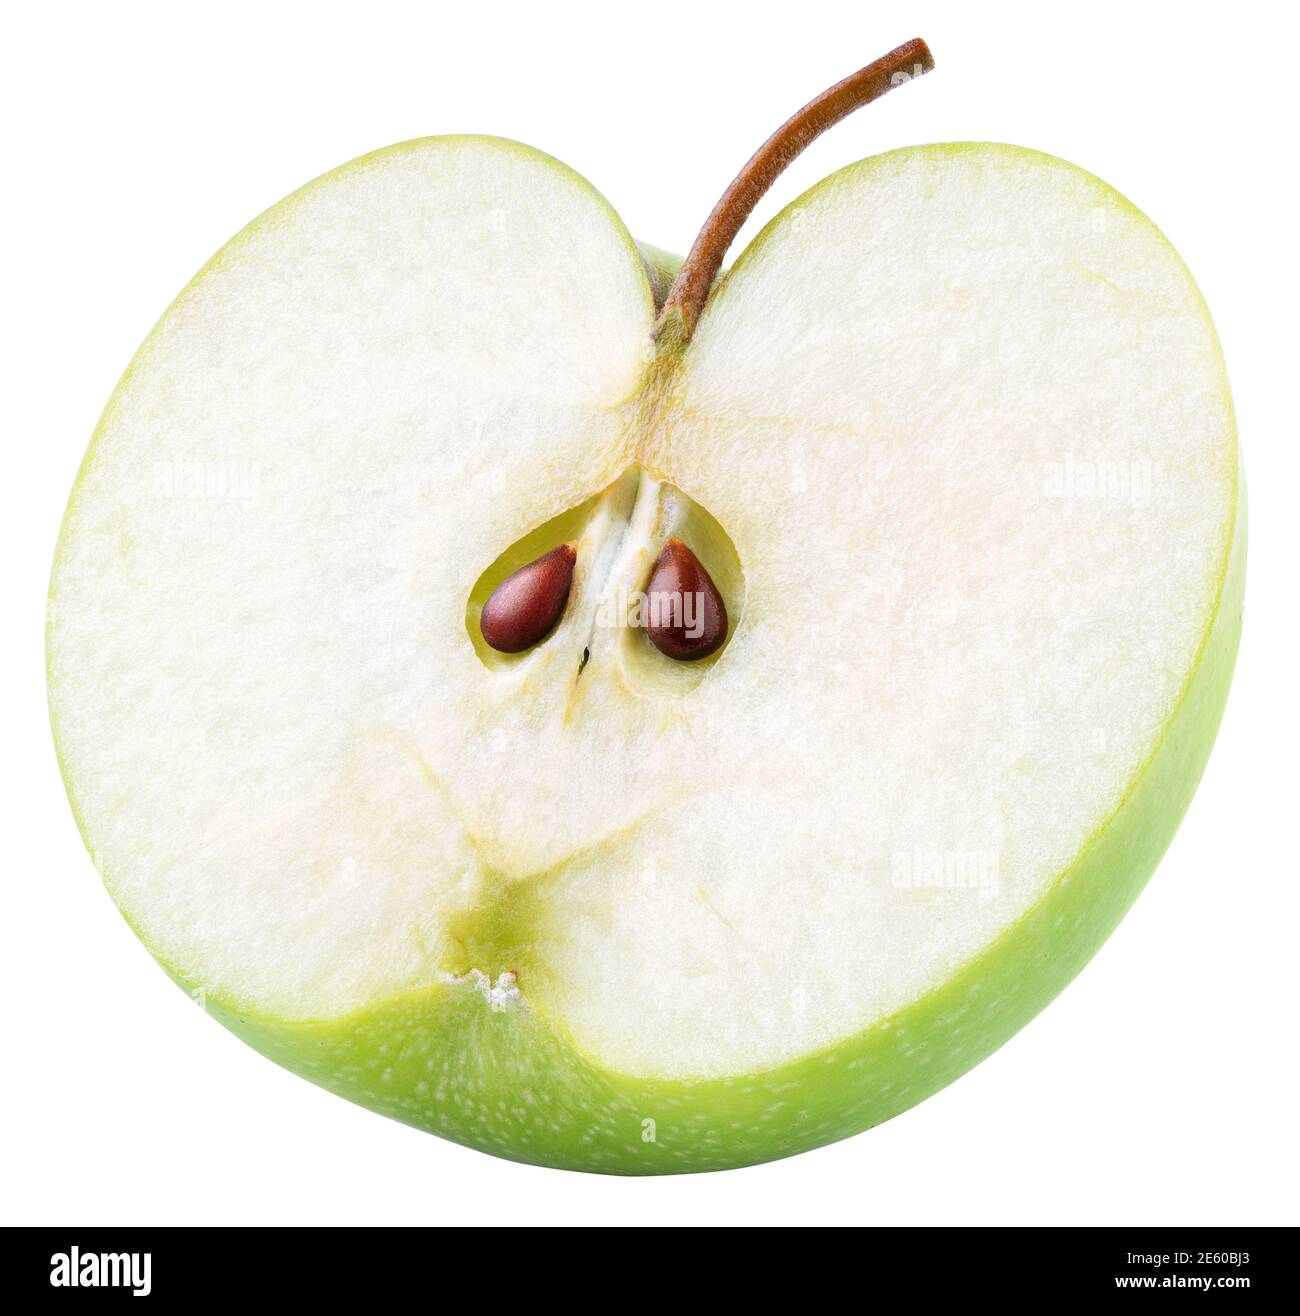 Metà verde di mela con semi e gambo isolato su sfondo bianco. Metà di mela verde con percorso di ritaglio. Profondità di campo completa Foto Stock